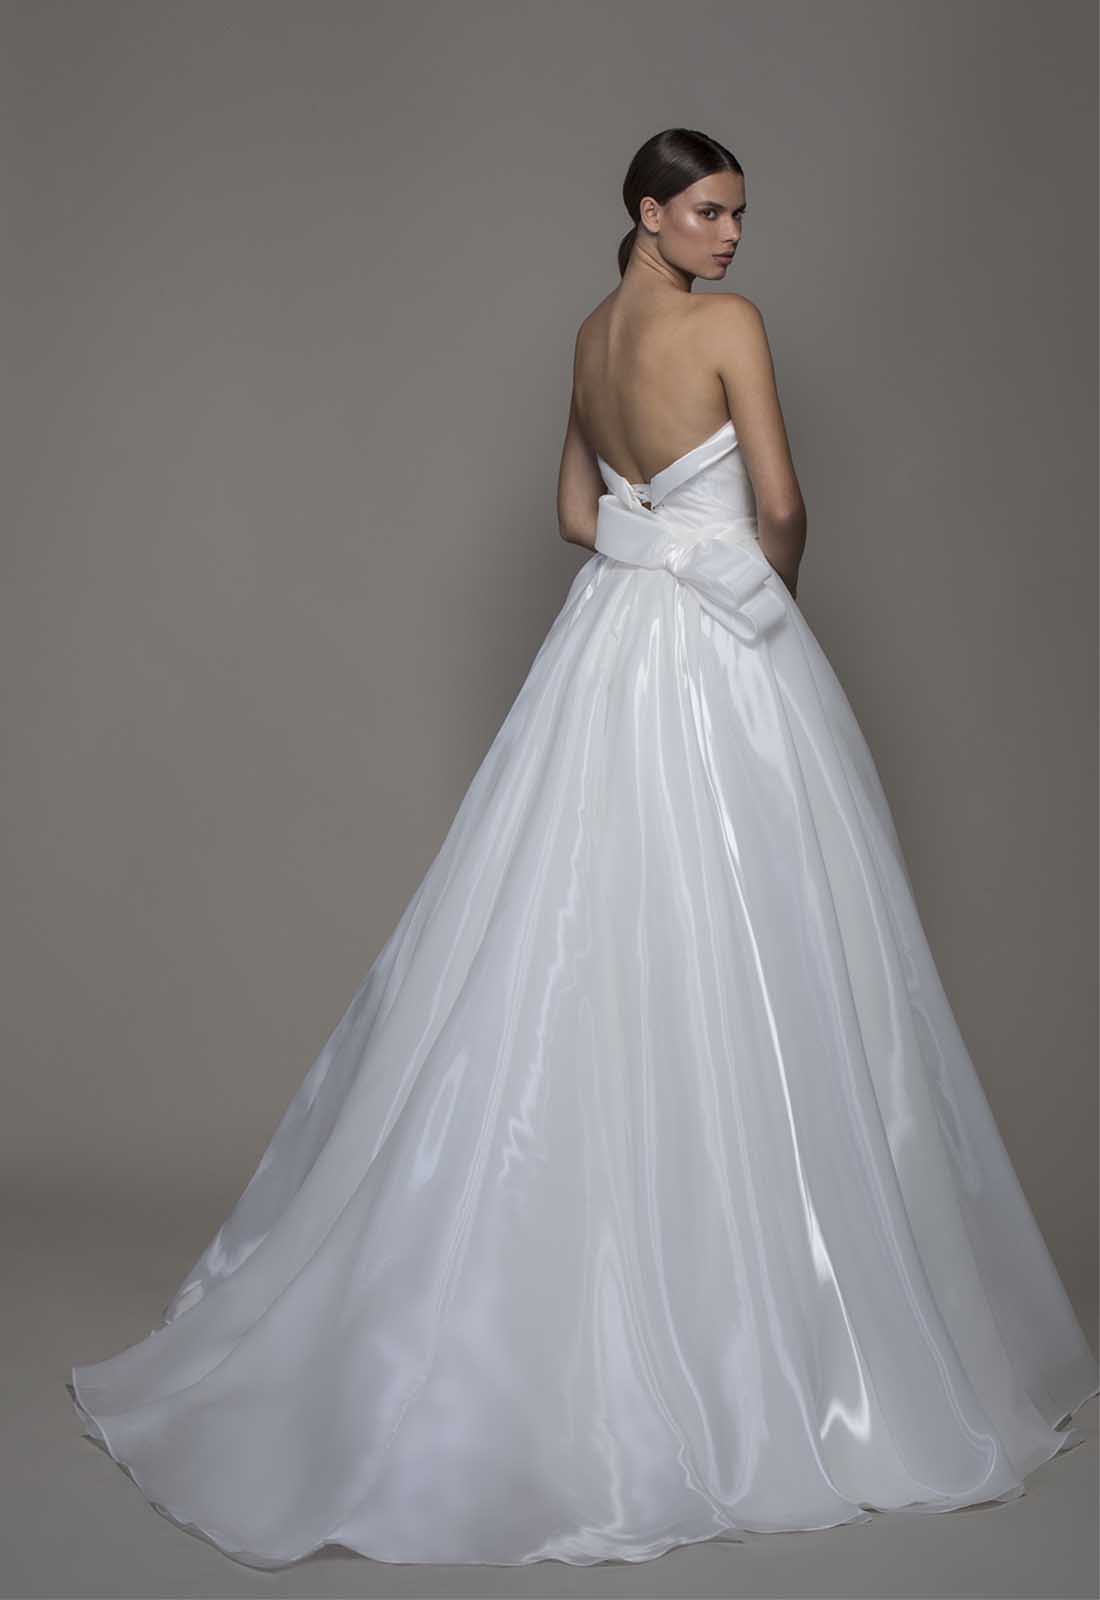 Wedding Gown Gorgeous : PNINA TORNAI